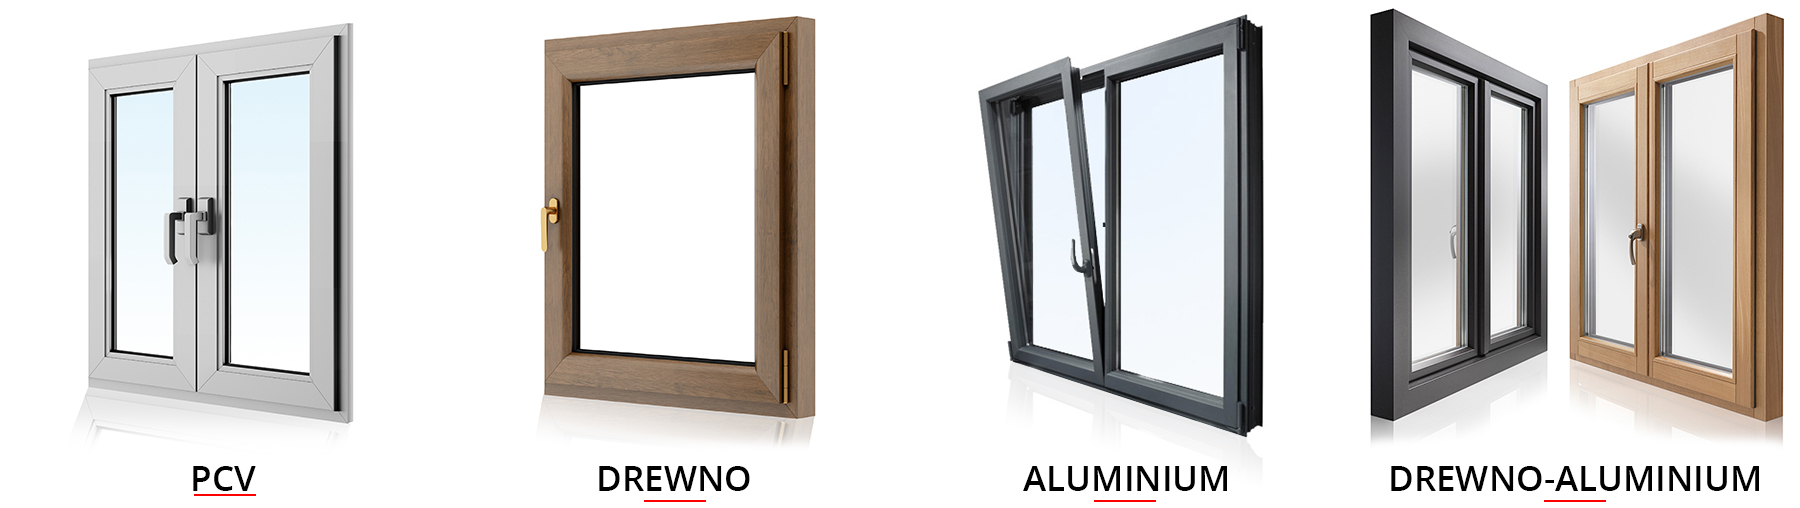 rodzaje okien - PCV, drewniane, aluminium, drewniano-aluminiowe